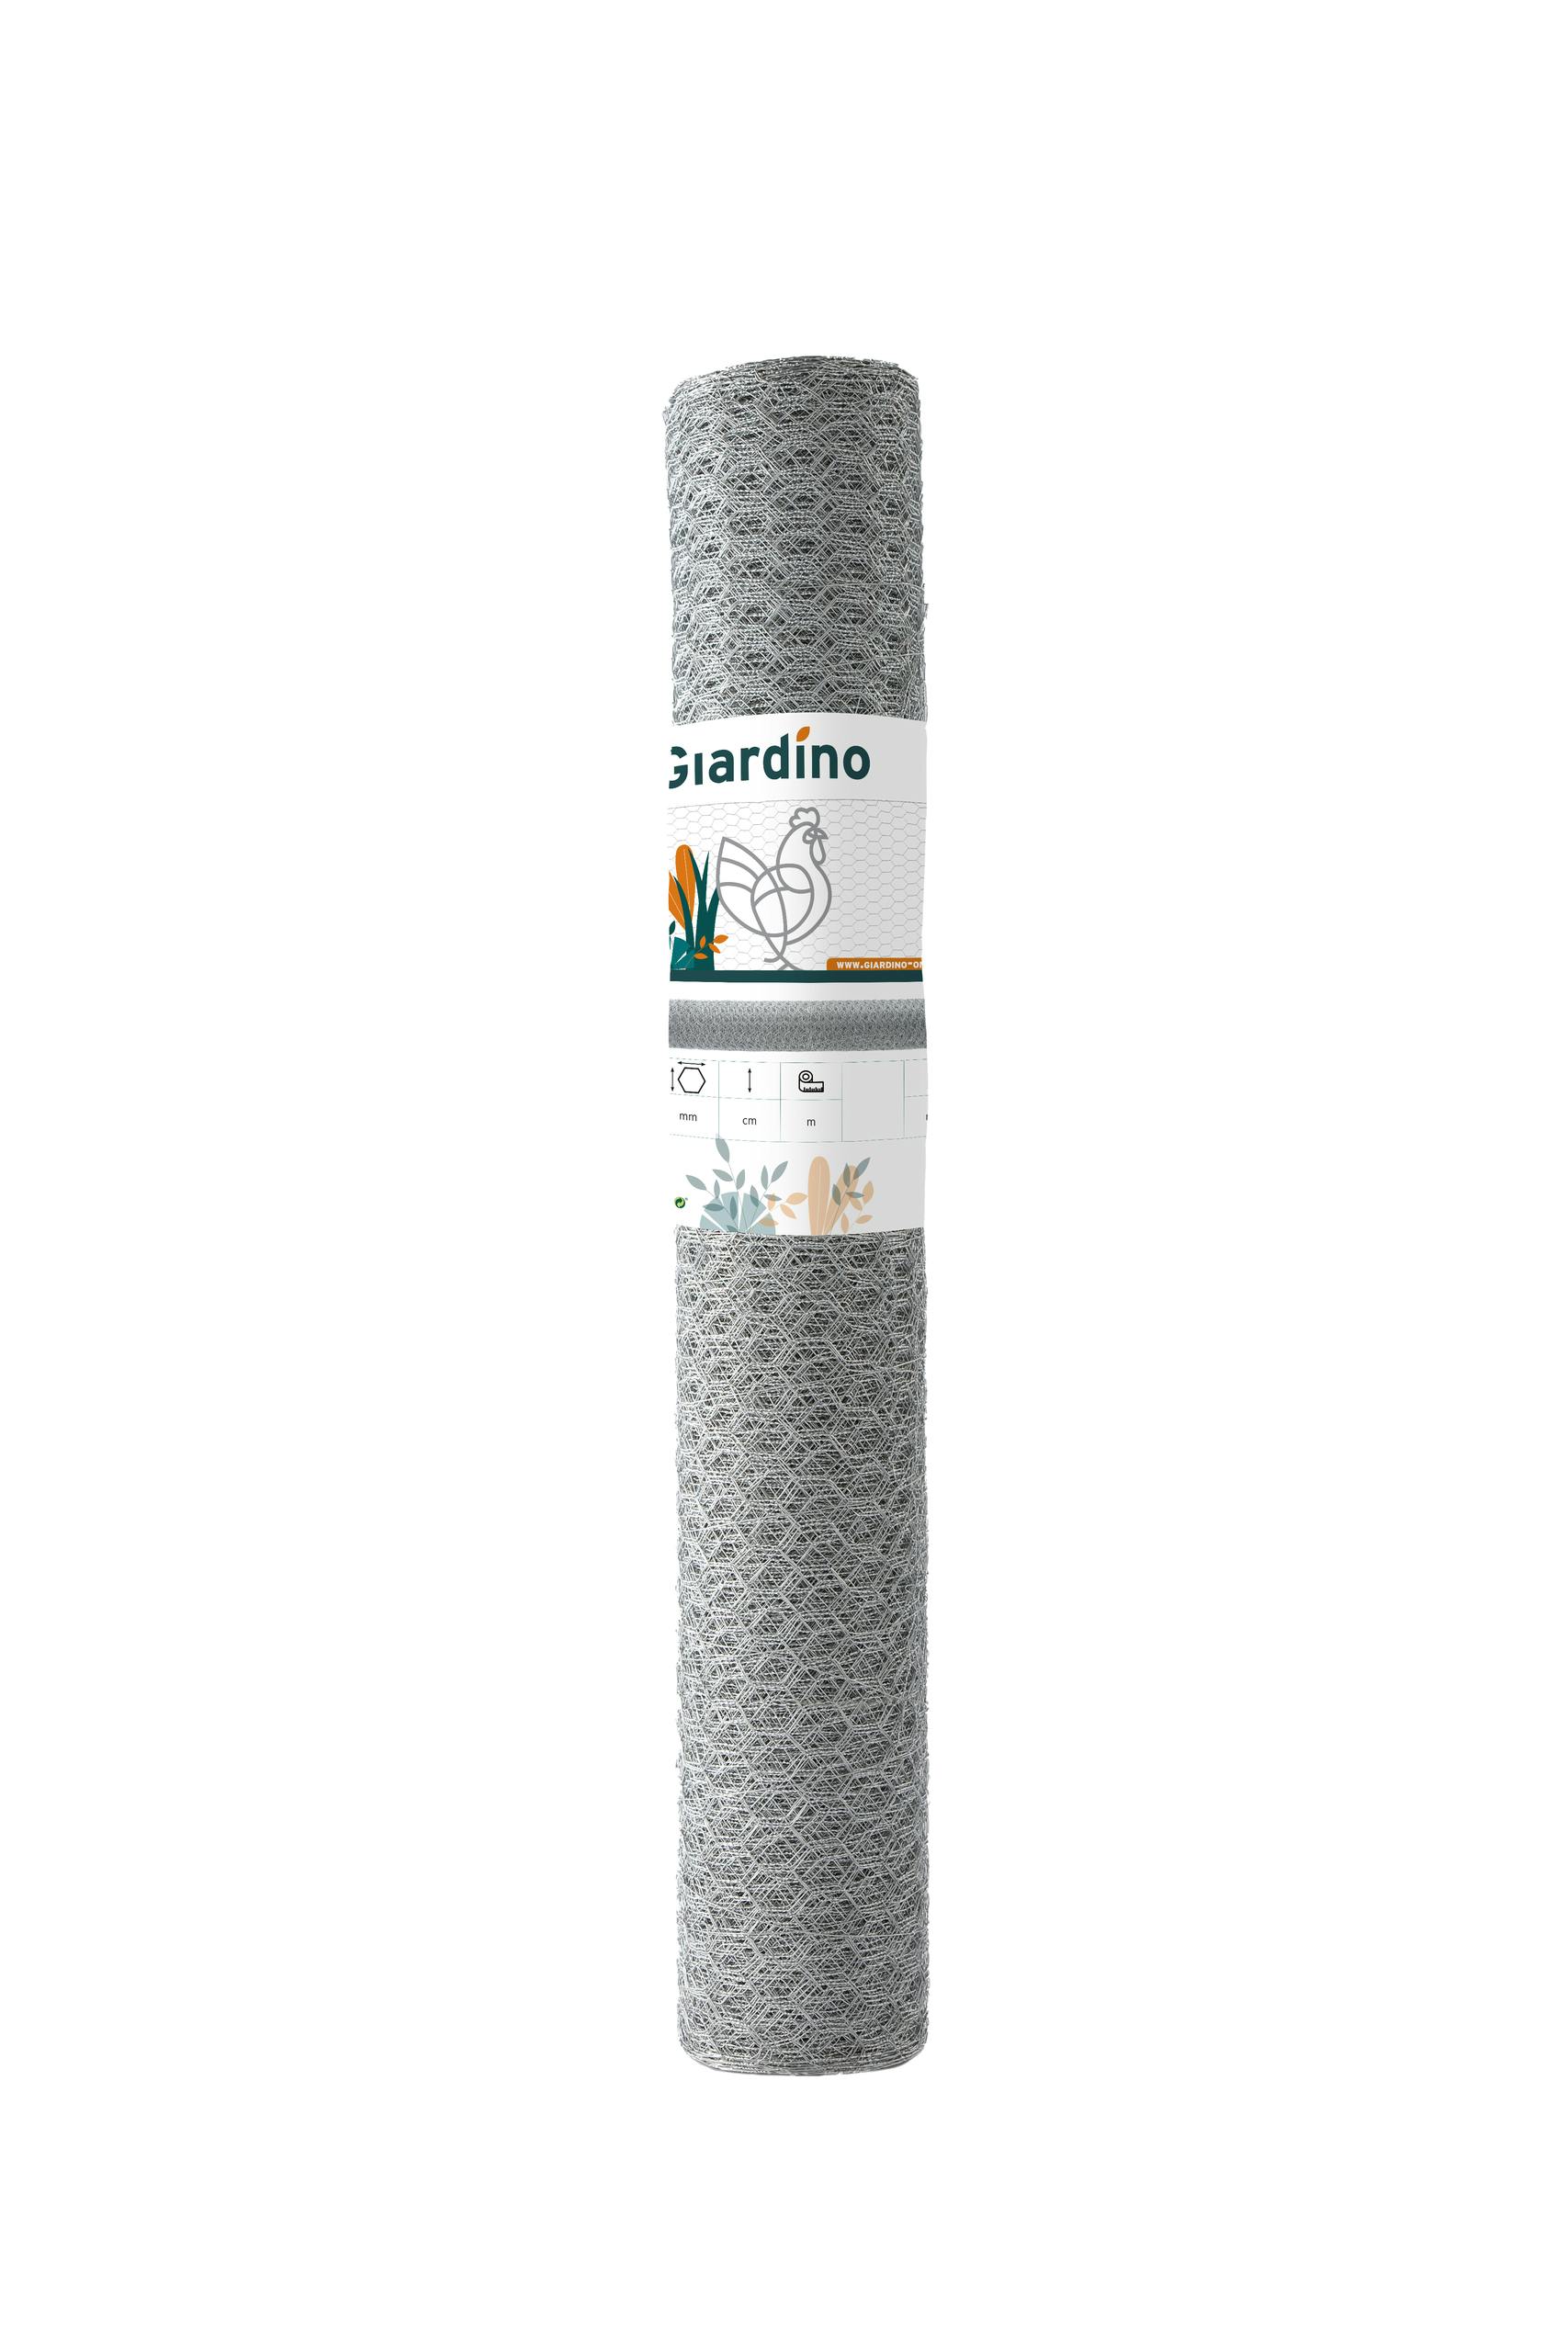 Giardino, Triple Torsion, Pré Galvanisé, 13x0.7mm X 50cm X 10m